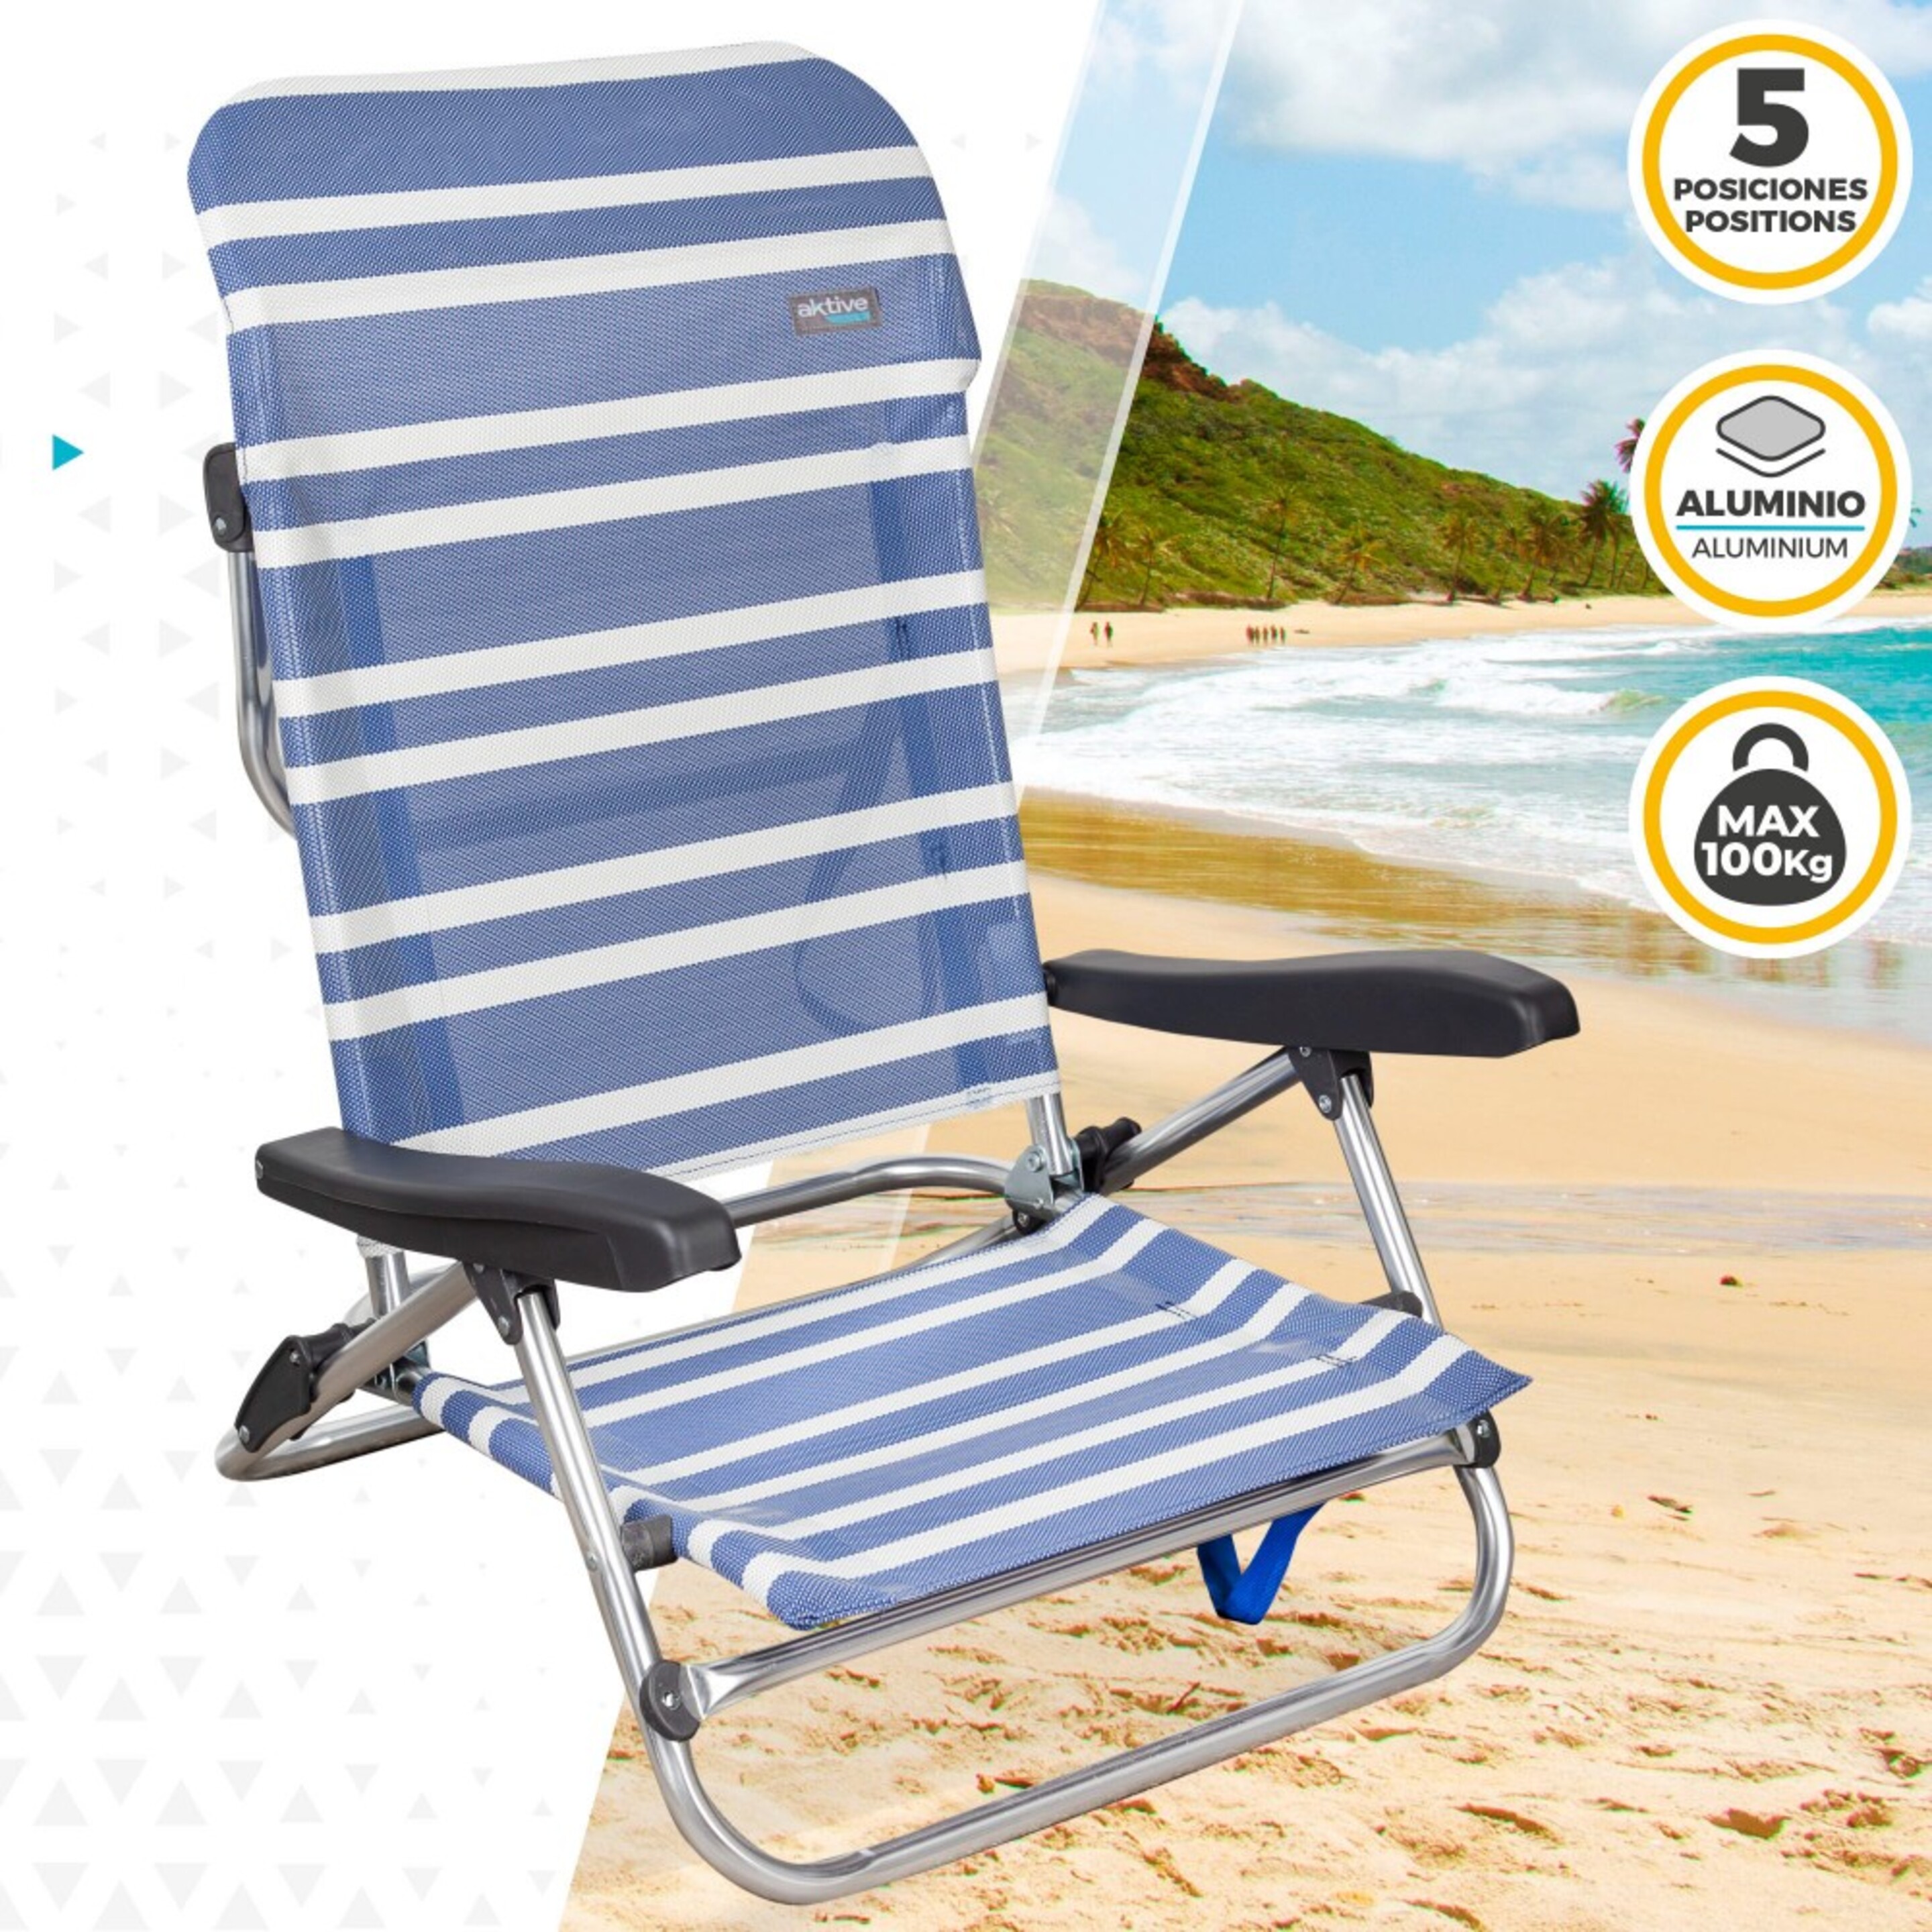 Cadeira De Praia Dobrável Baixa Alumínio 5 Posições Aktive Beach